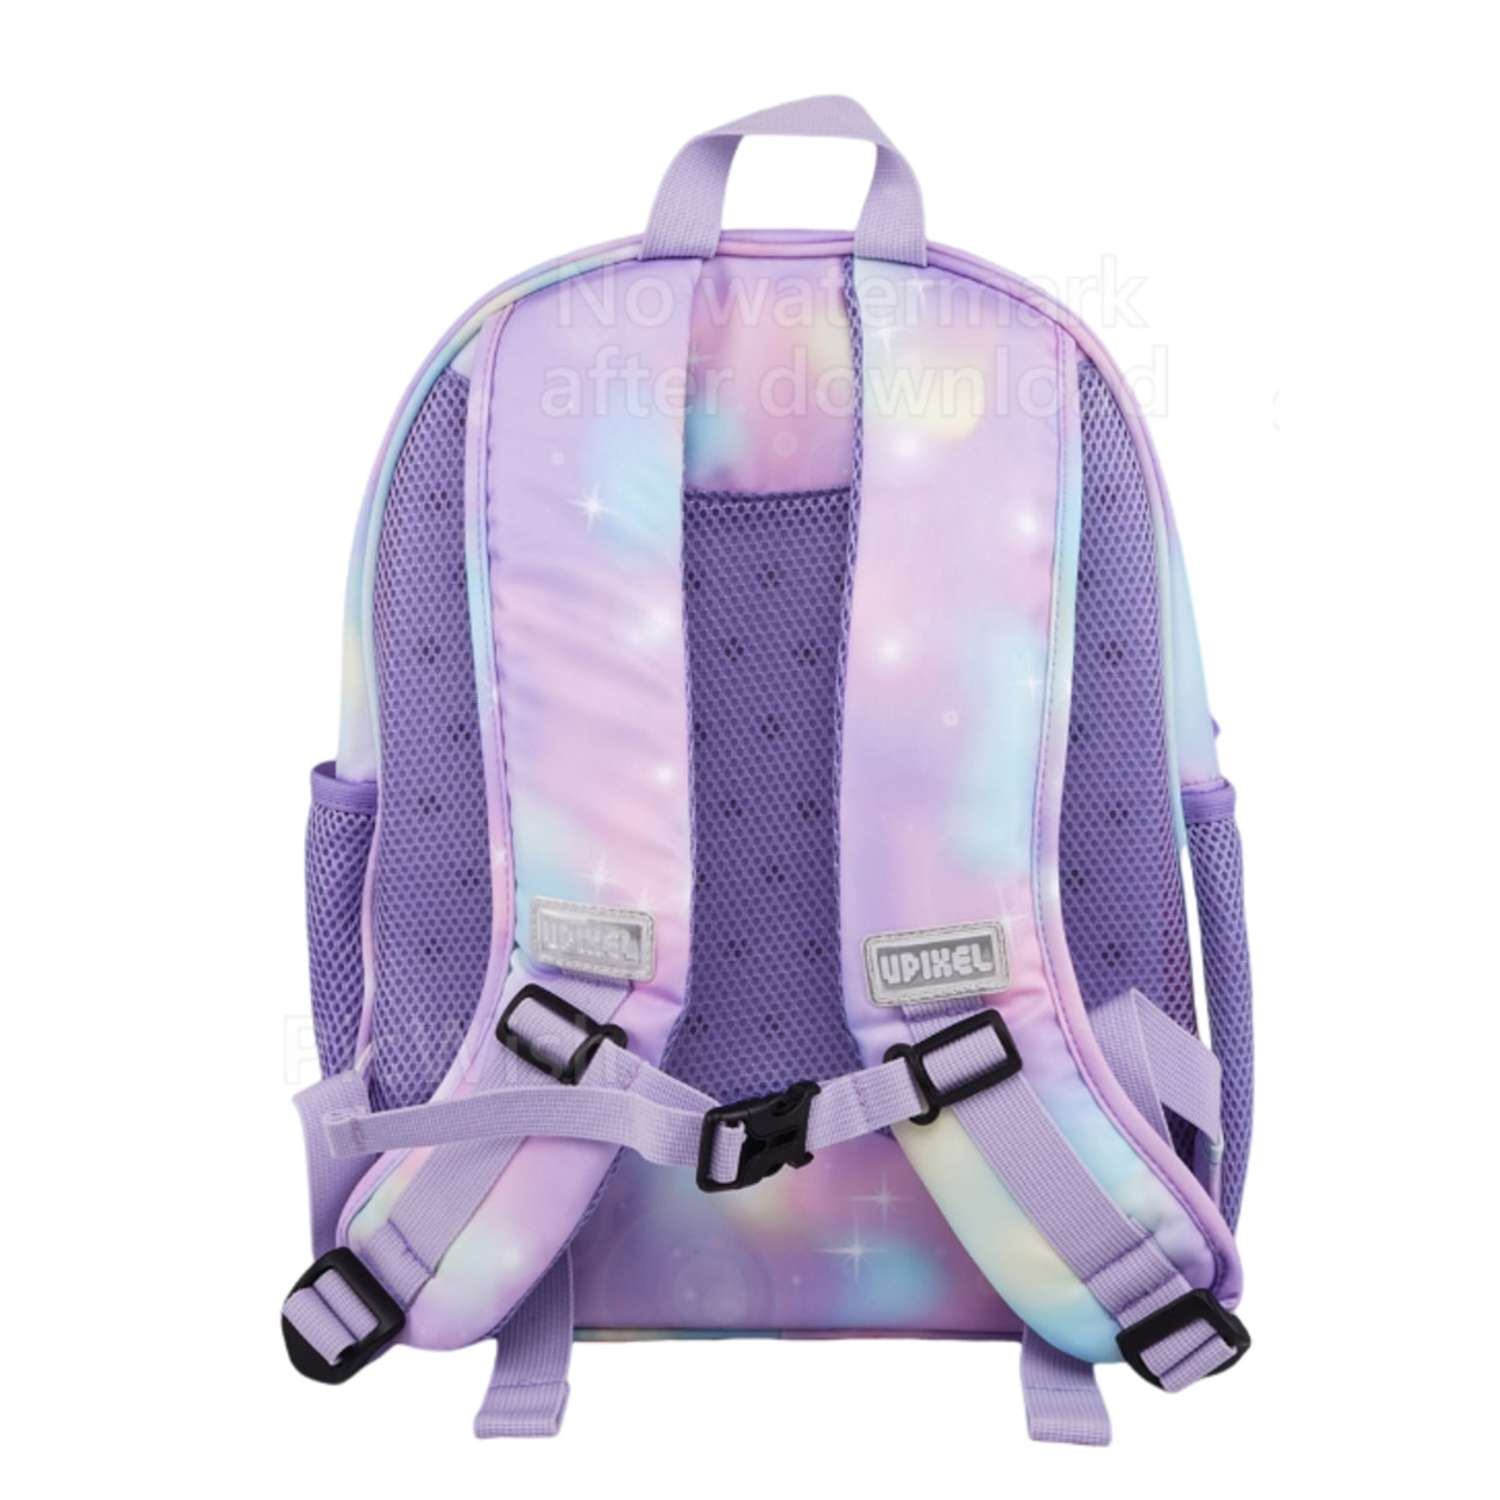 Рюкзак пиксельный Upixel rainbow Futuristic Kids School Bag U21-001 фиолетовый - фото 5